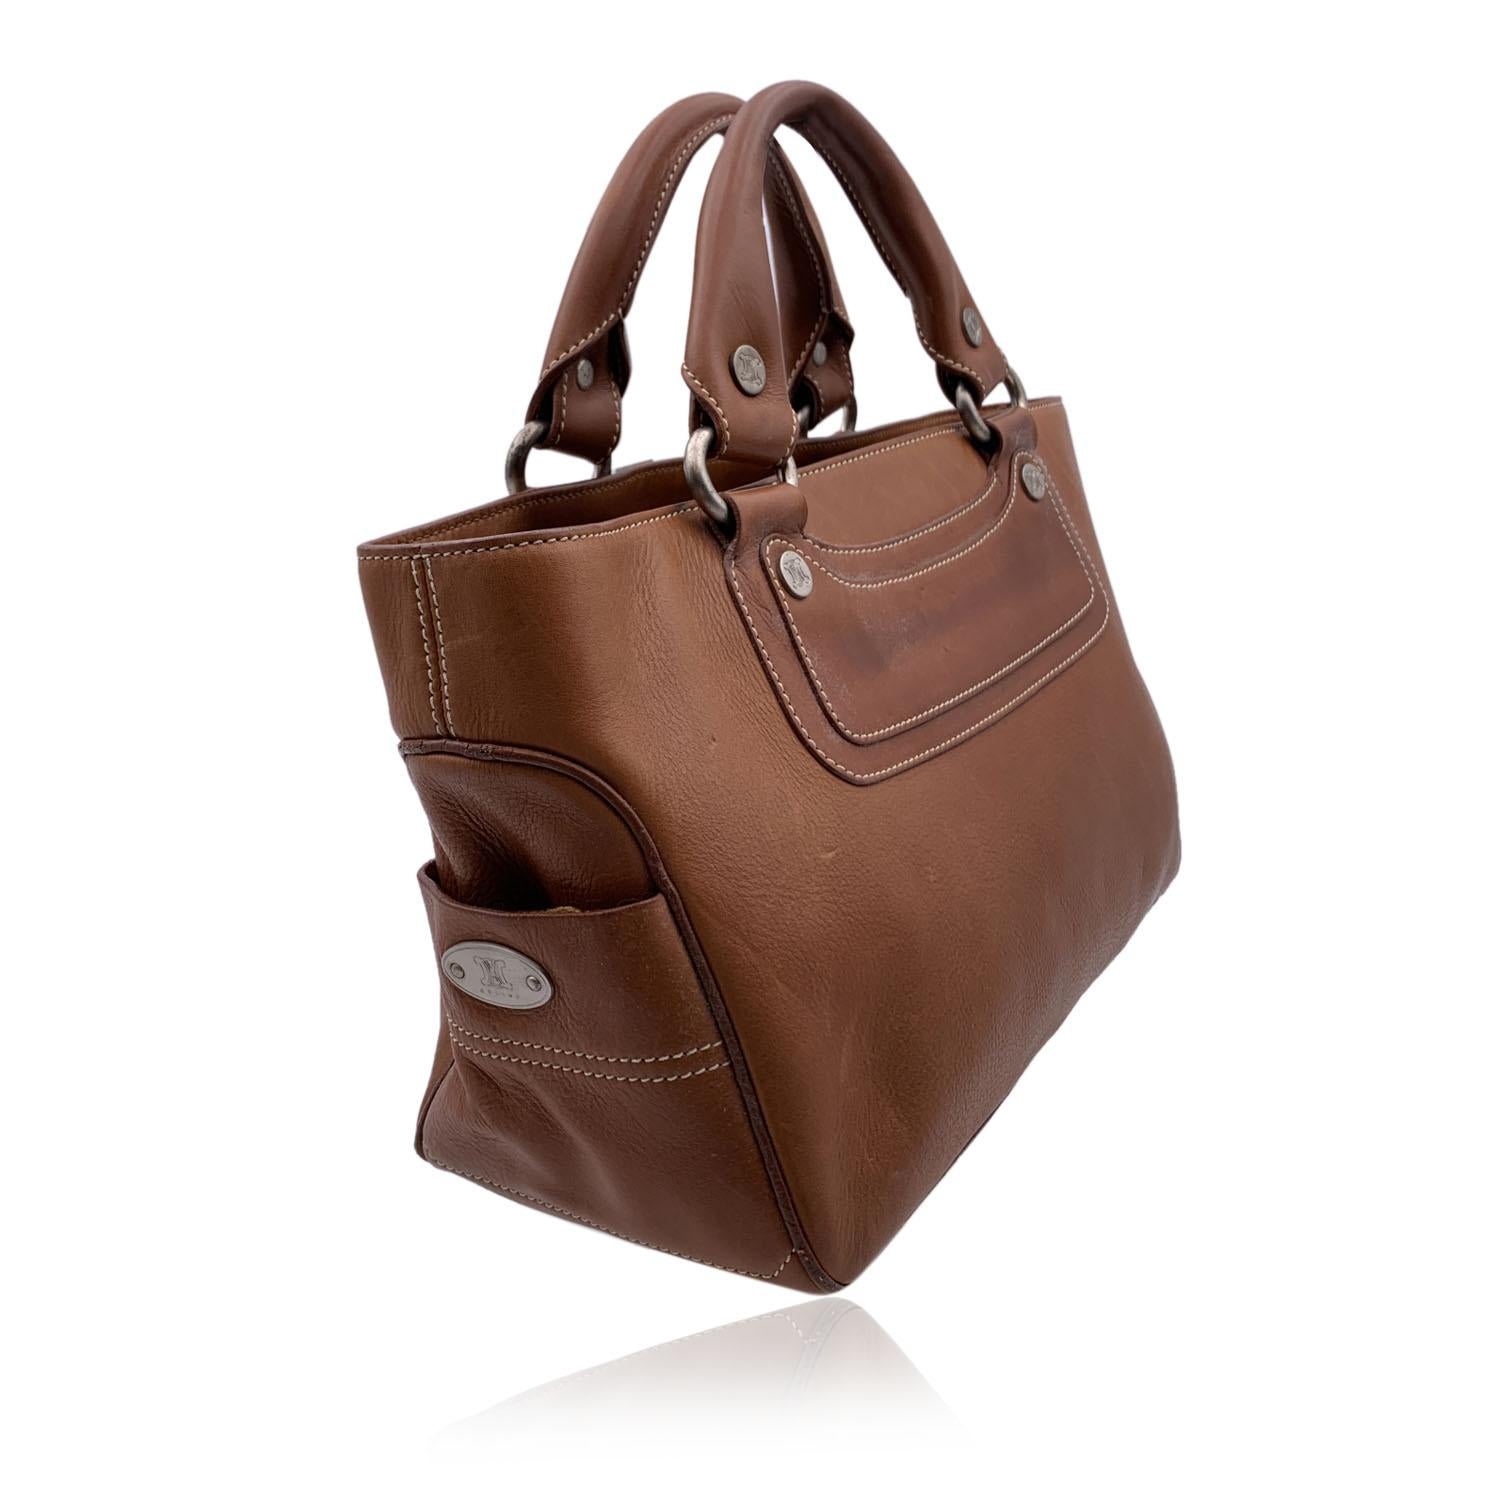 light brown satchel